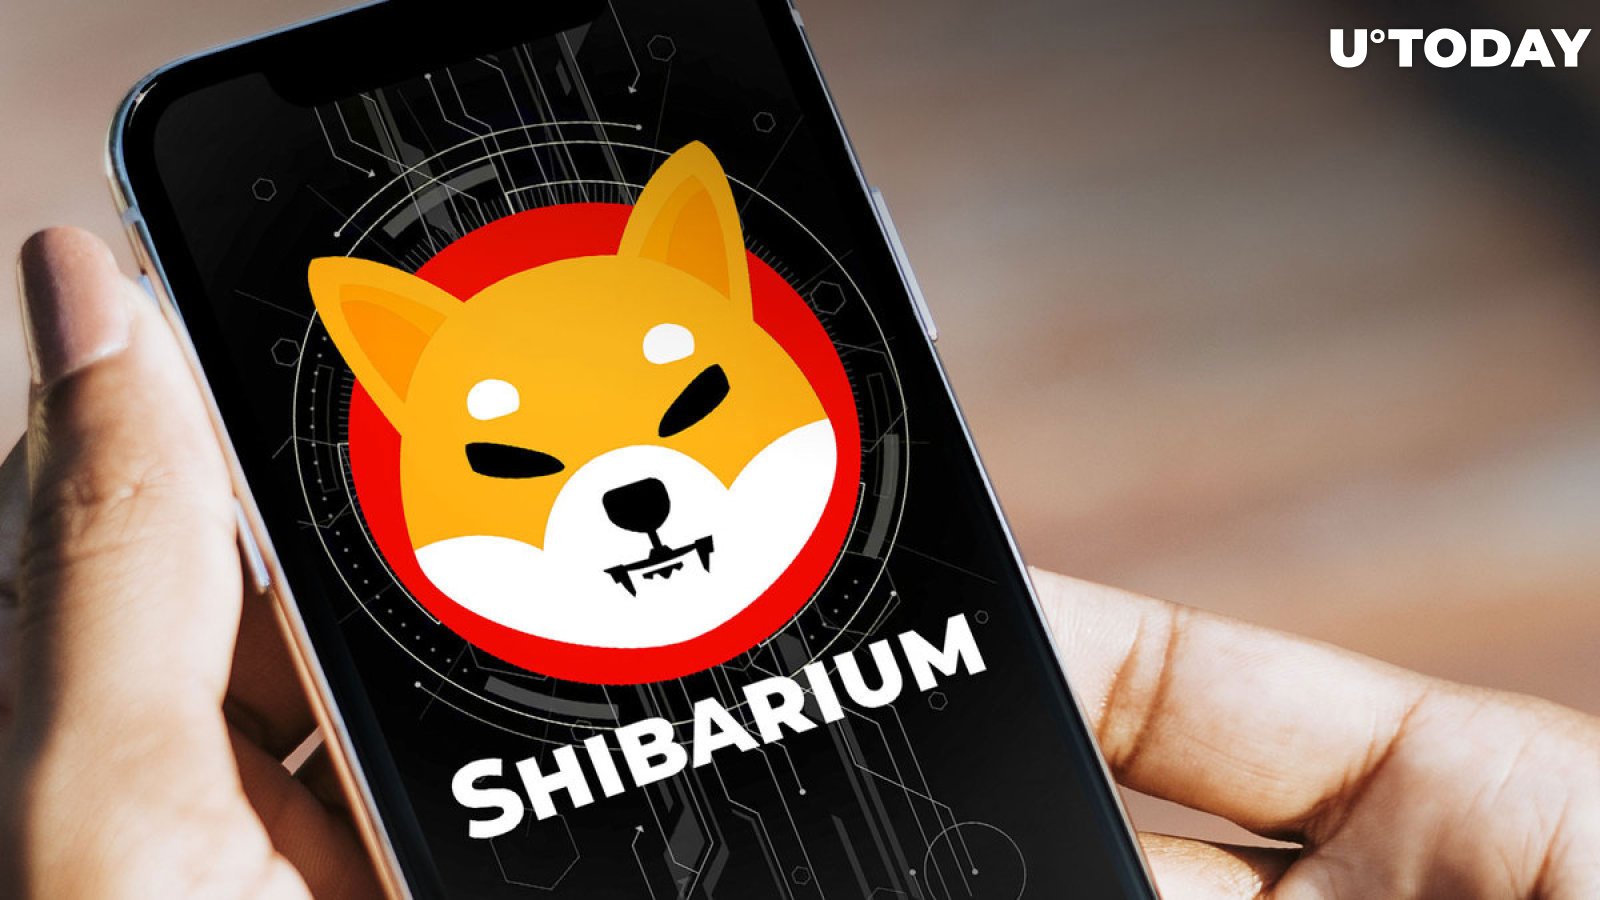 Shytoshi Kusama's Recently Deleted Message Leaves SHIB Army Puzzled – Shibarium Hint?